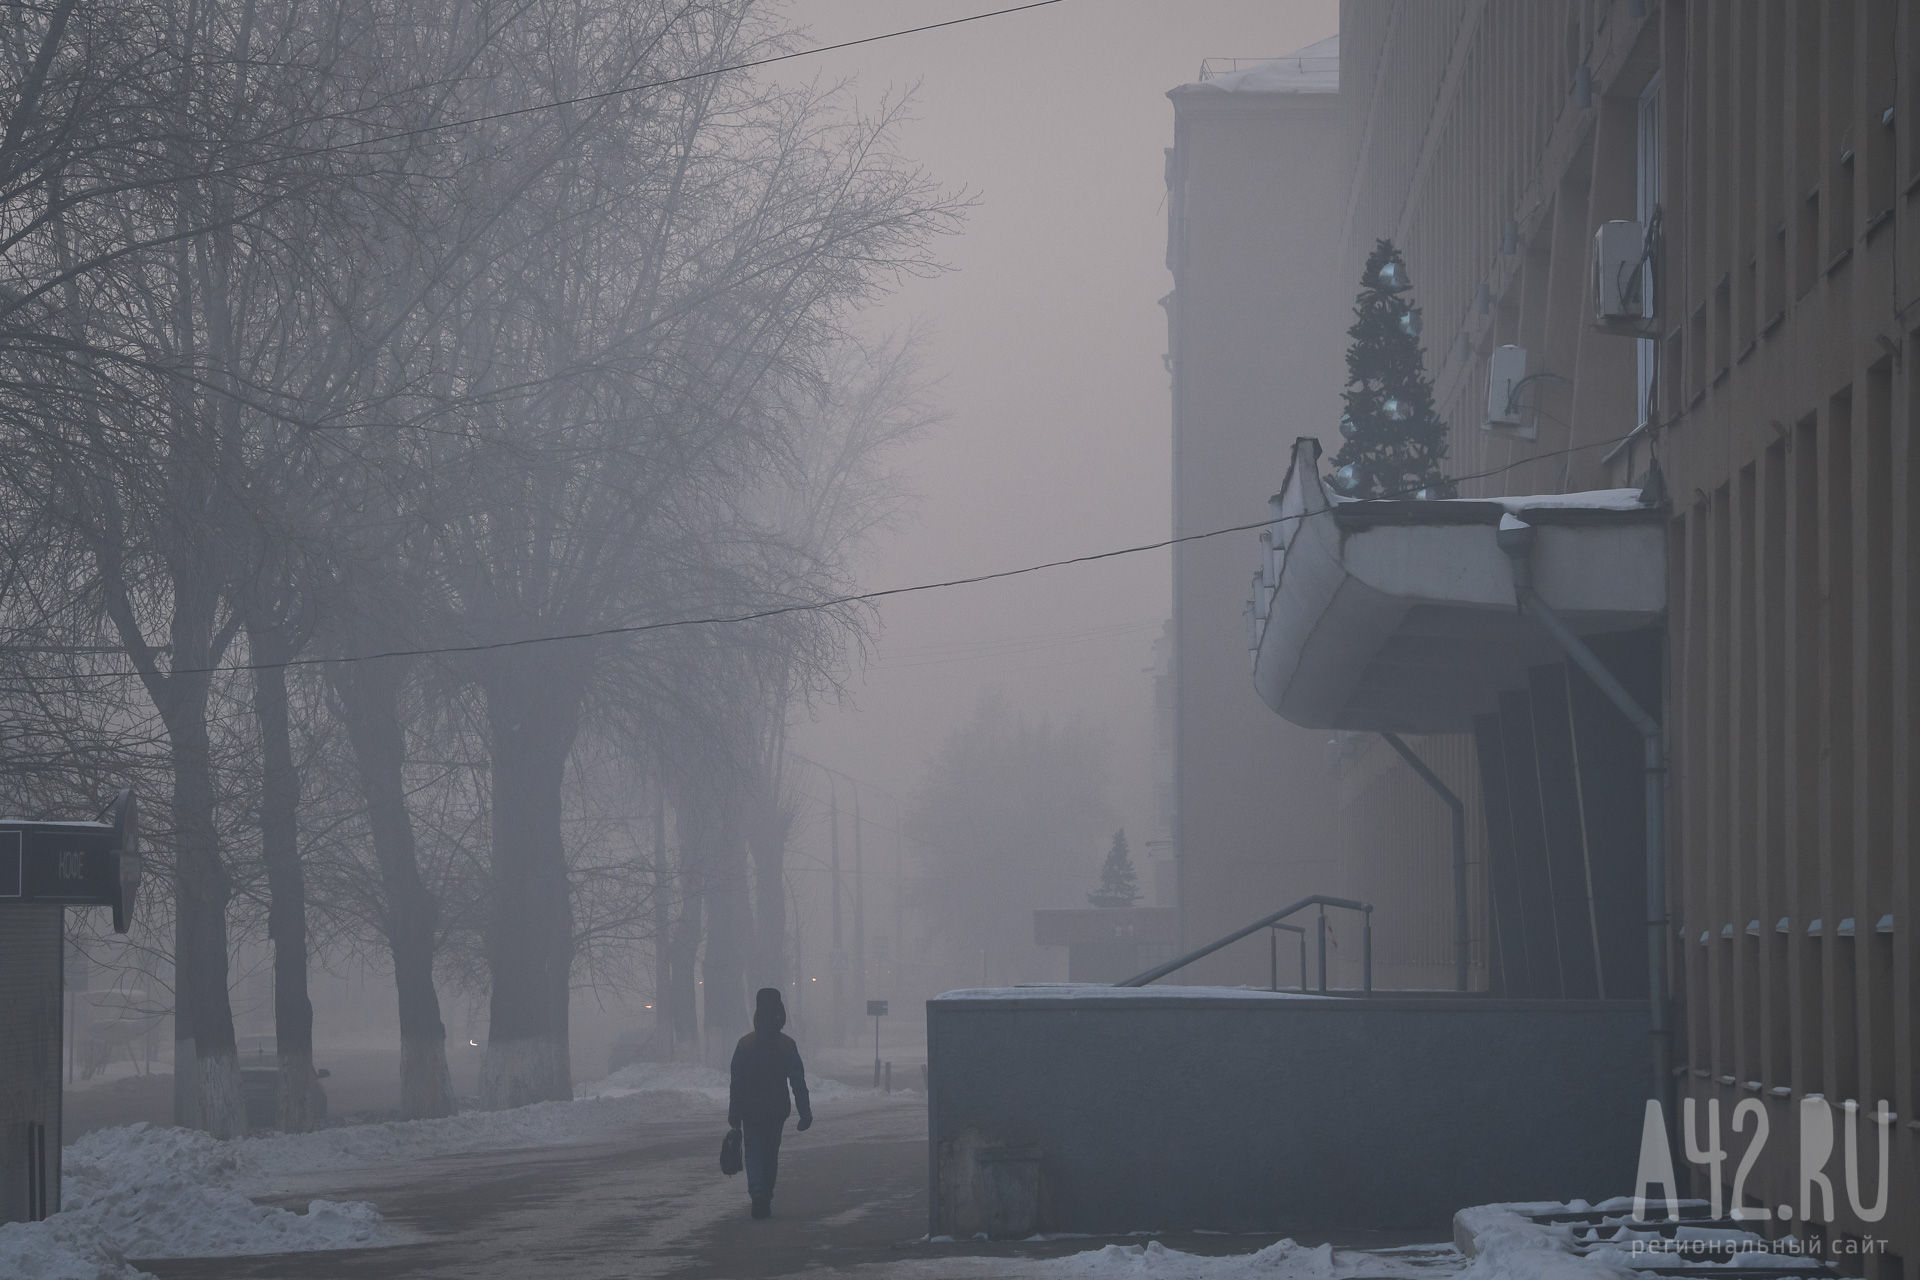 «Глотку дерёт даже дома с закрытыми окнами»: кузбассовцев разозлил смог и неприятный запах